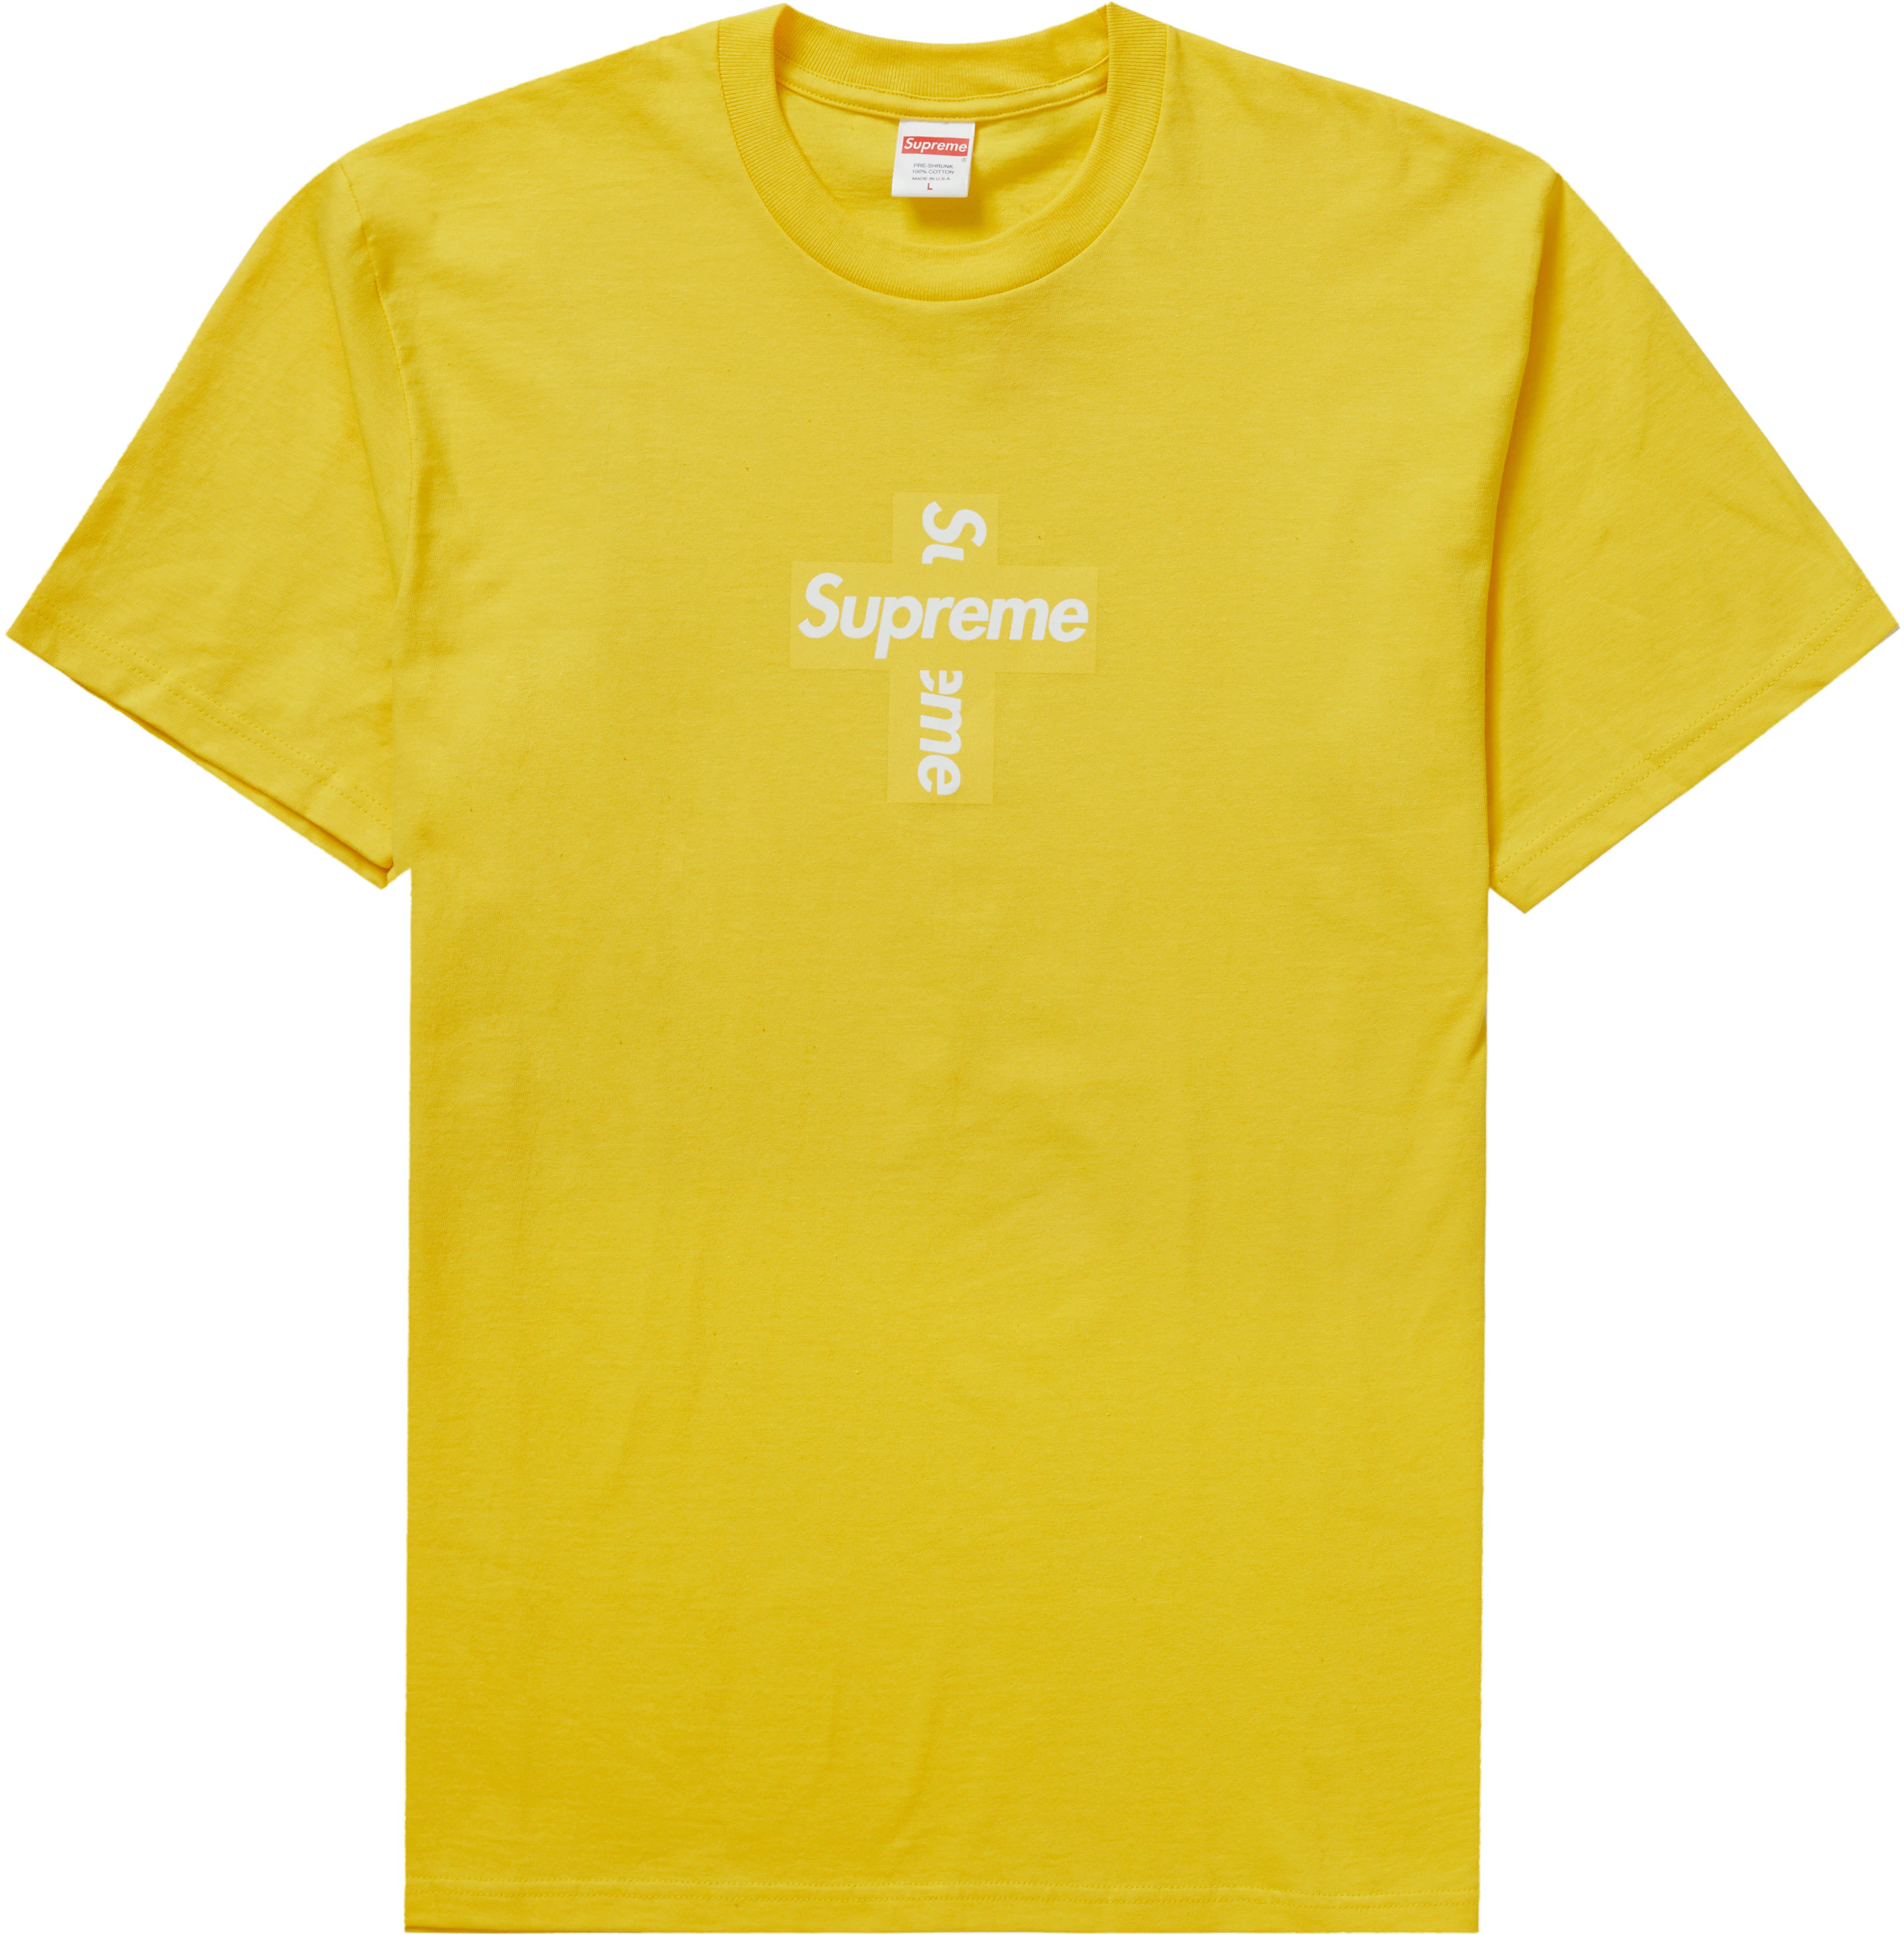 Size 25) Supreme Cross Box Logo Tee 'Yellow', Men's Fashion, Tops ...